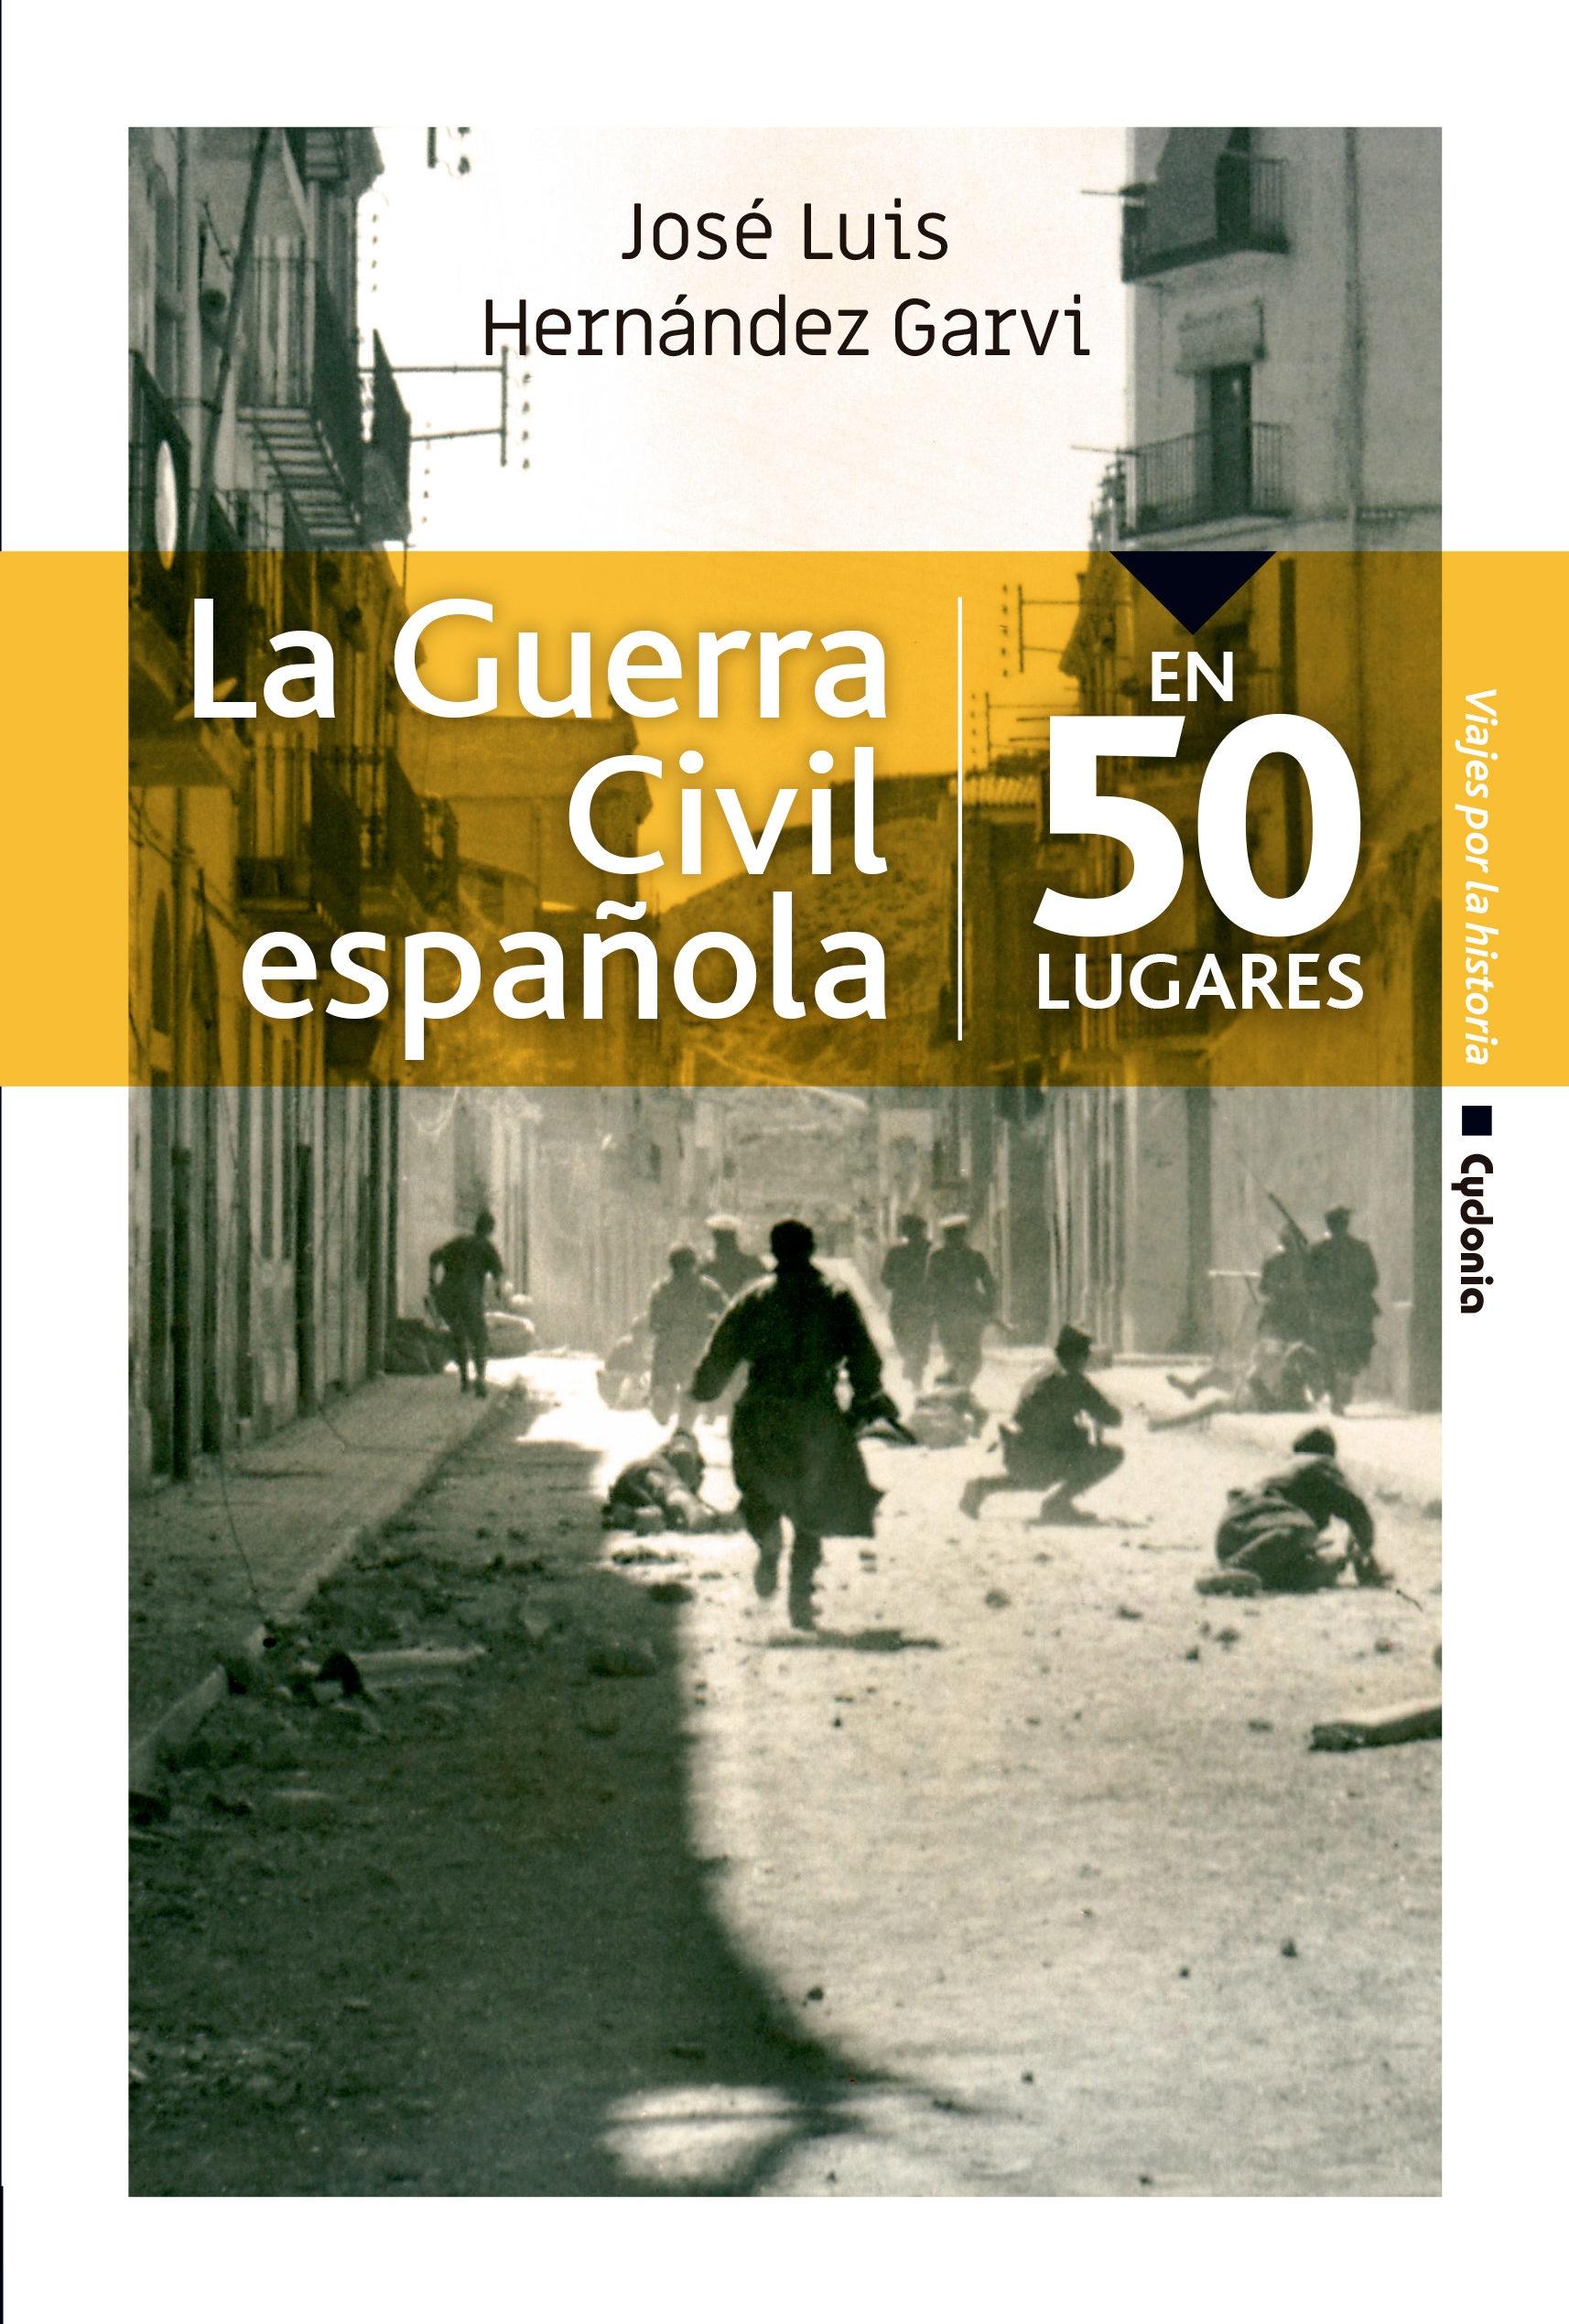 La Guerra Civil española "En 50 lugares"